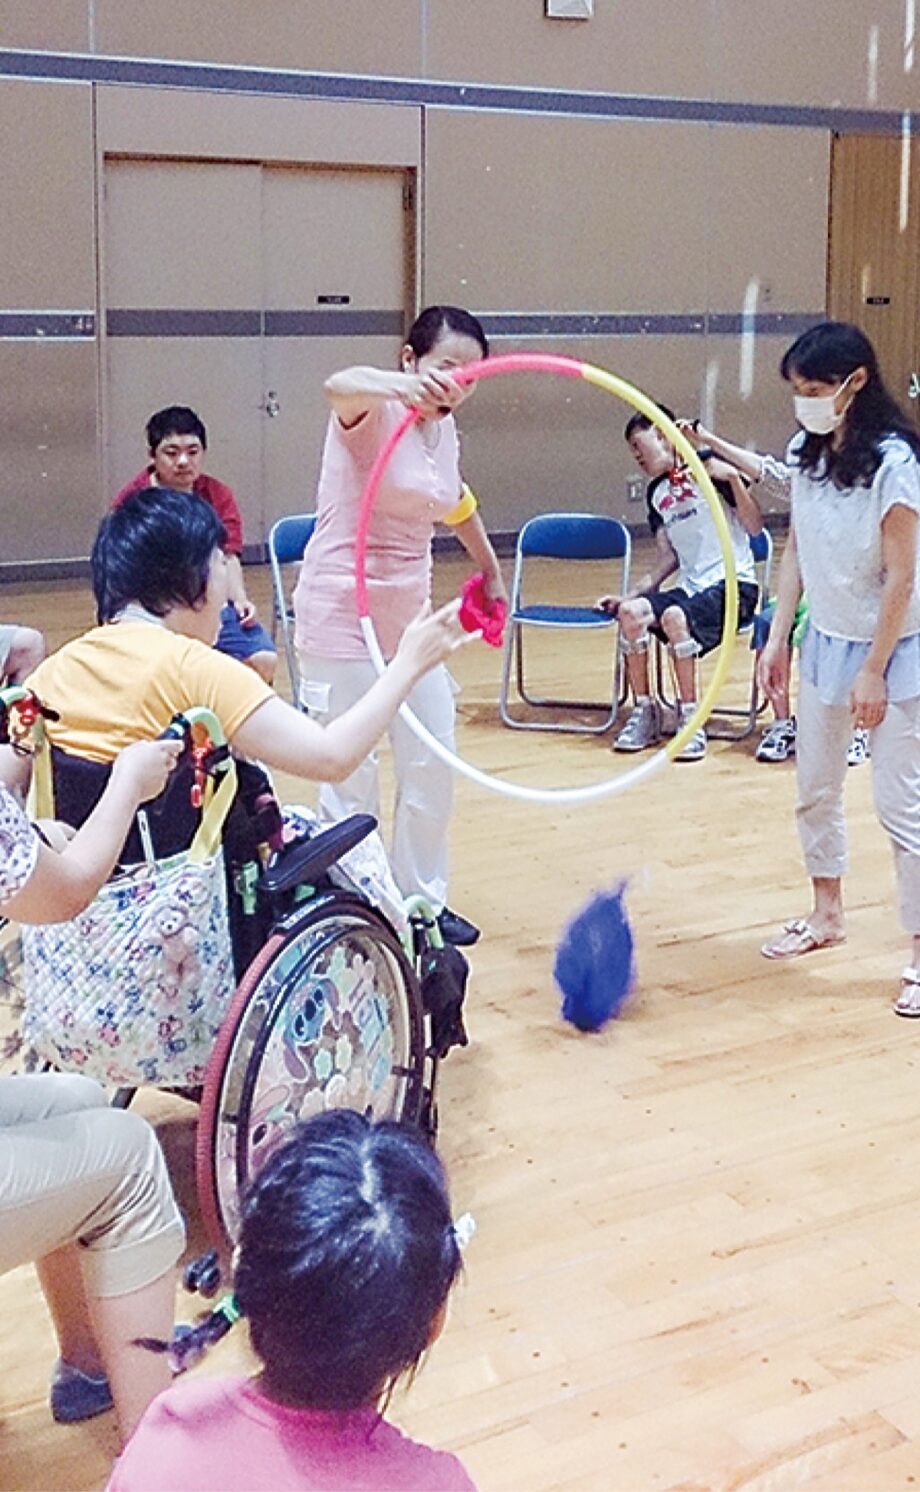 【参加者募集】横須賀ムーブメント主催「障害児者のための体験会」7/6開催